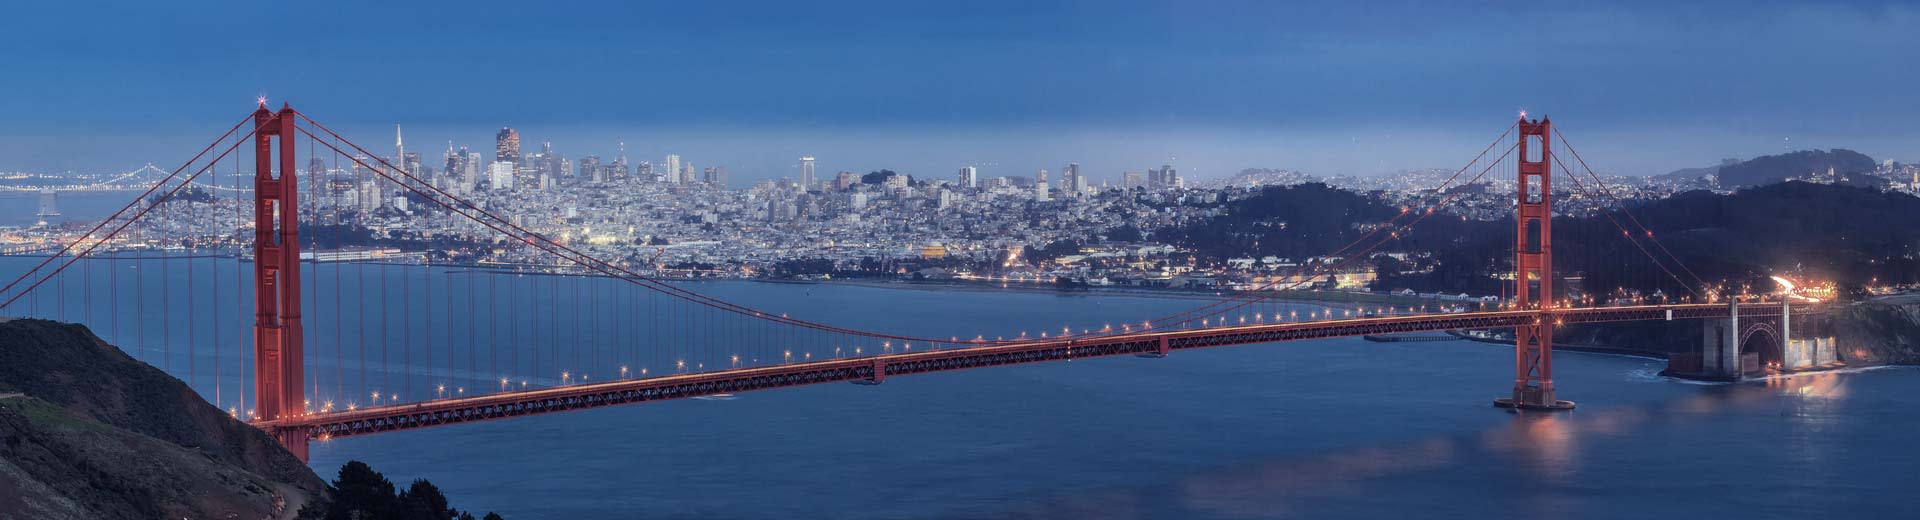 Avec San Francisco en arrière-plan, le Golden Gate Bridge de renommée mondiale s'étend à travers la baie.